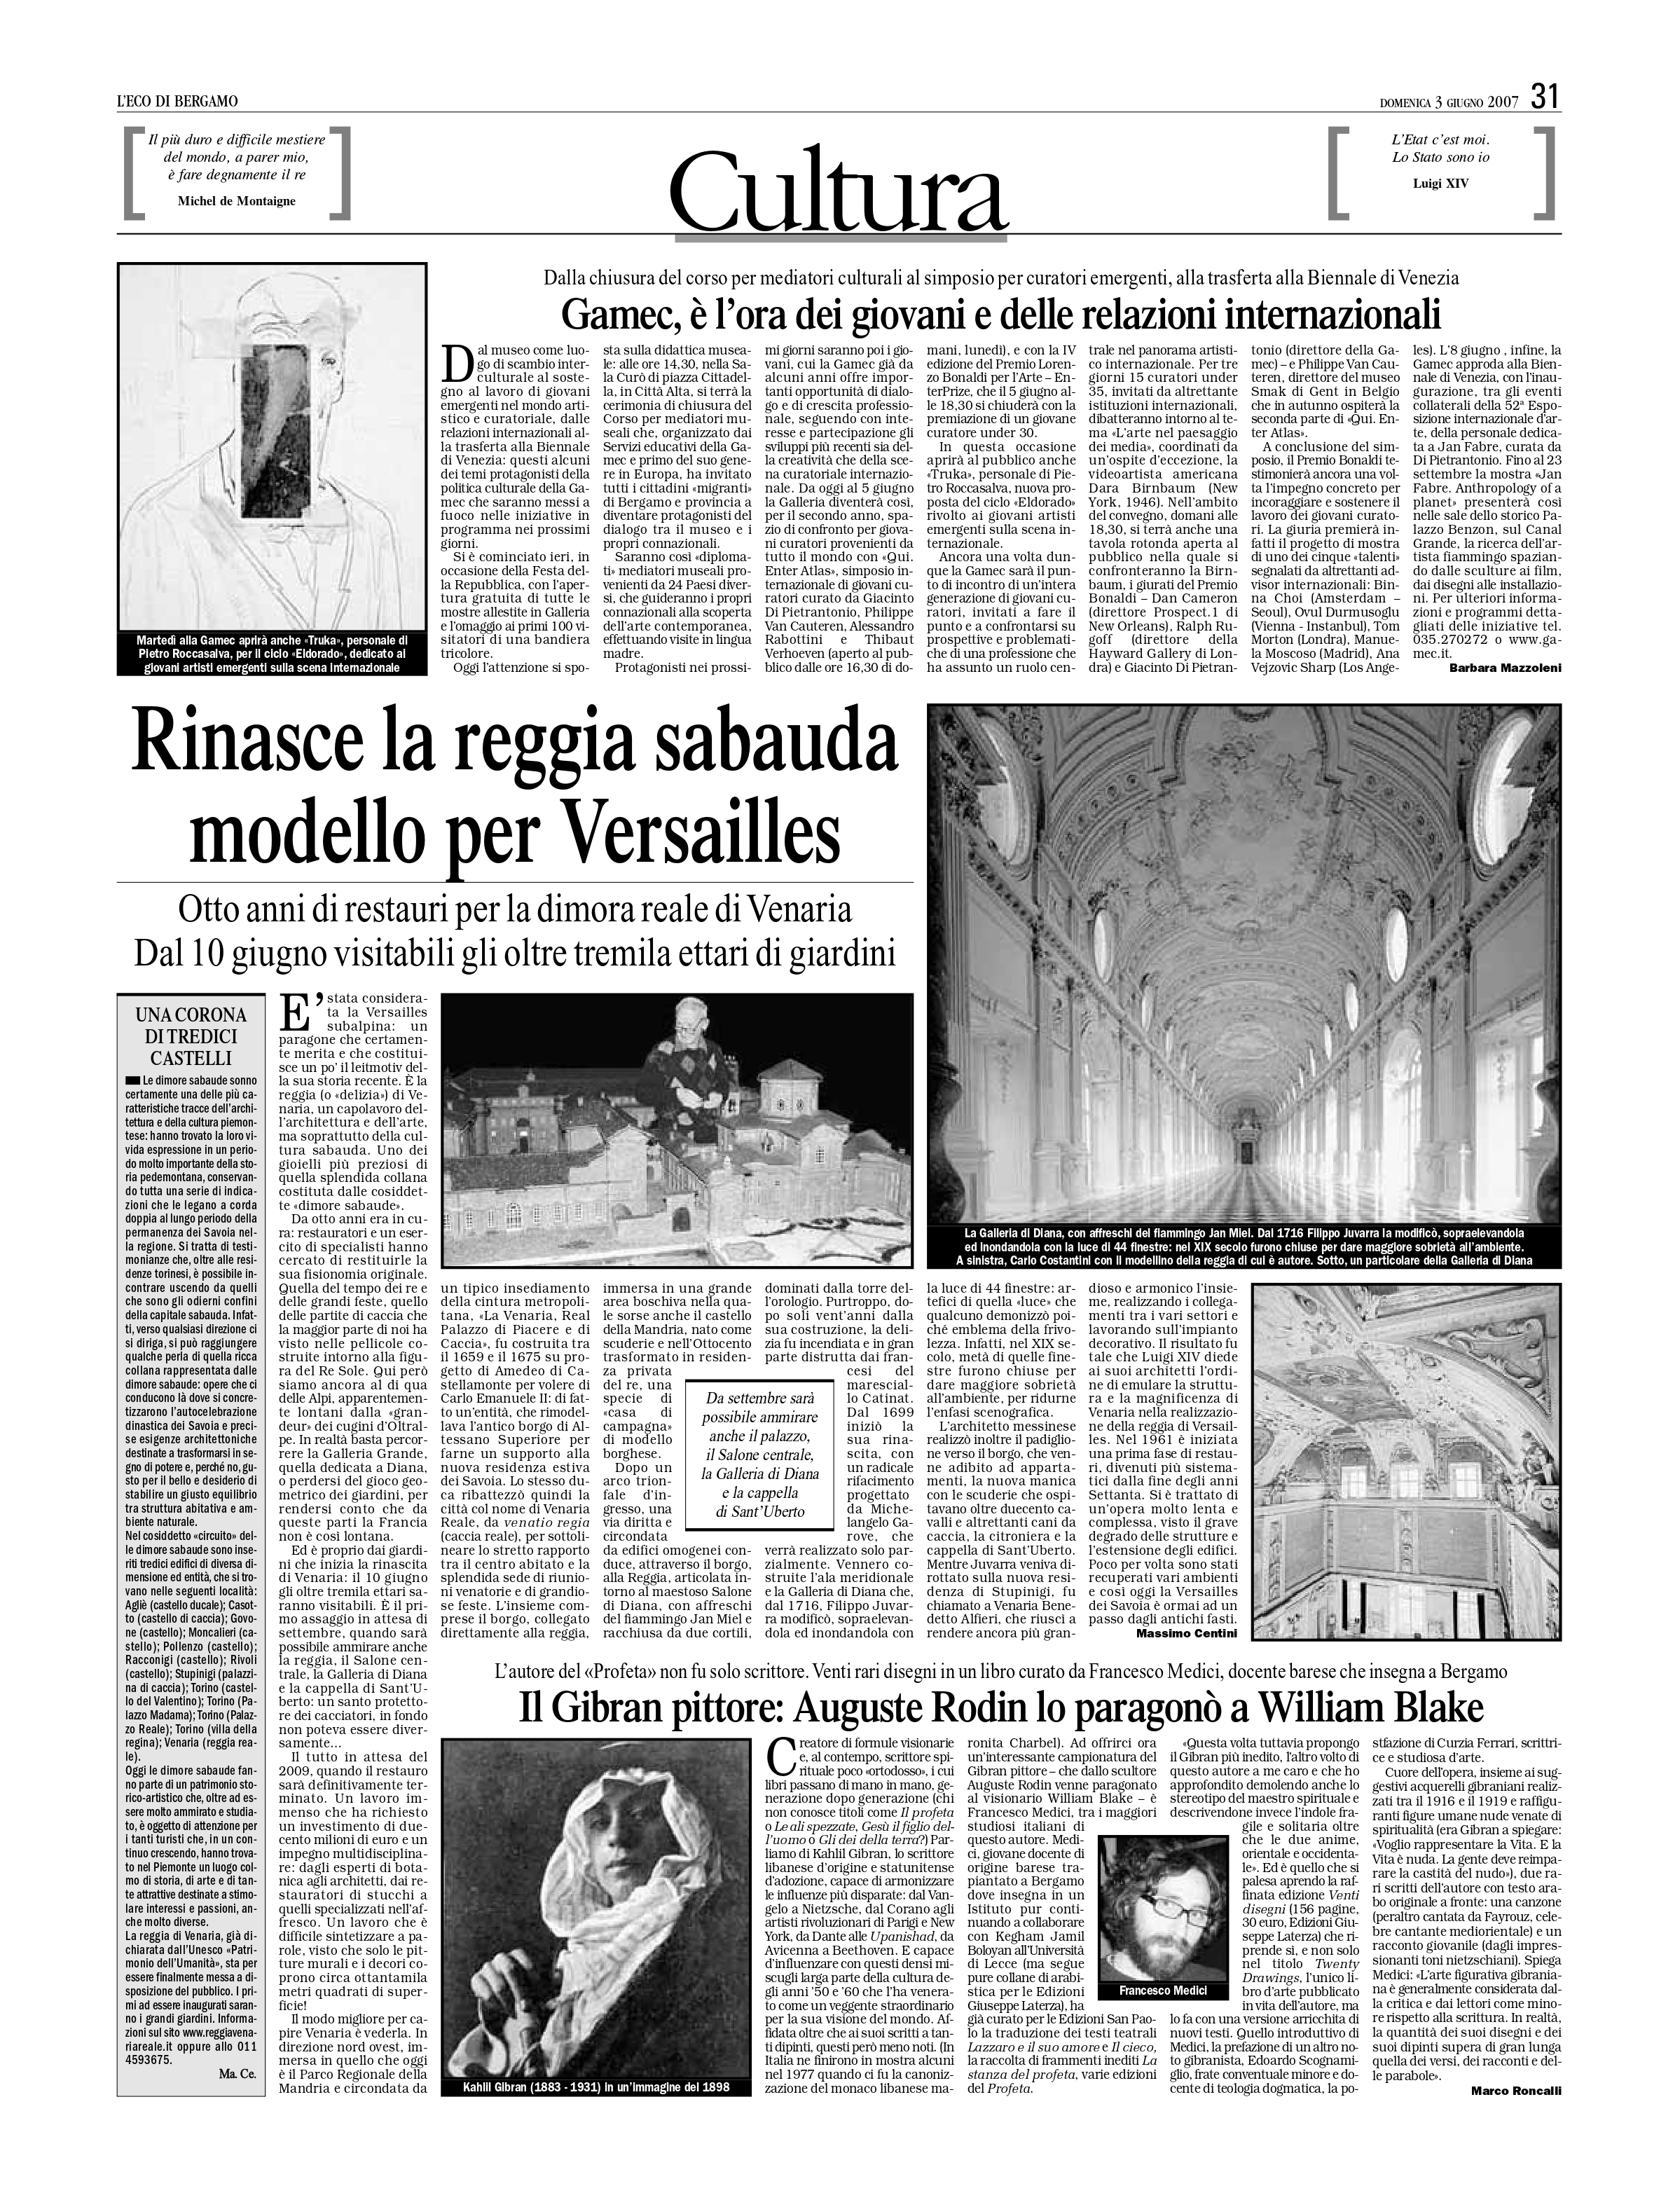 Marco Roncalli, "Il Gibran pittore: Auguste Rodin lo paragonò a William Blake", L’Eco di Bergamo, Jun 3, 2007, p. 31 (review)